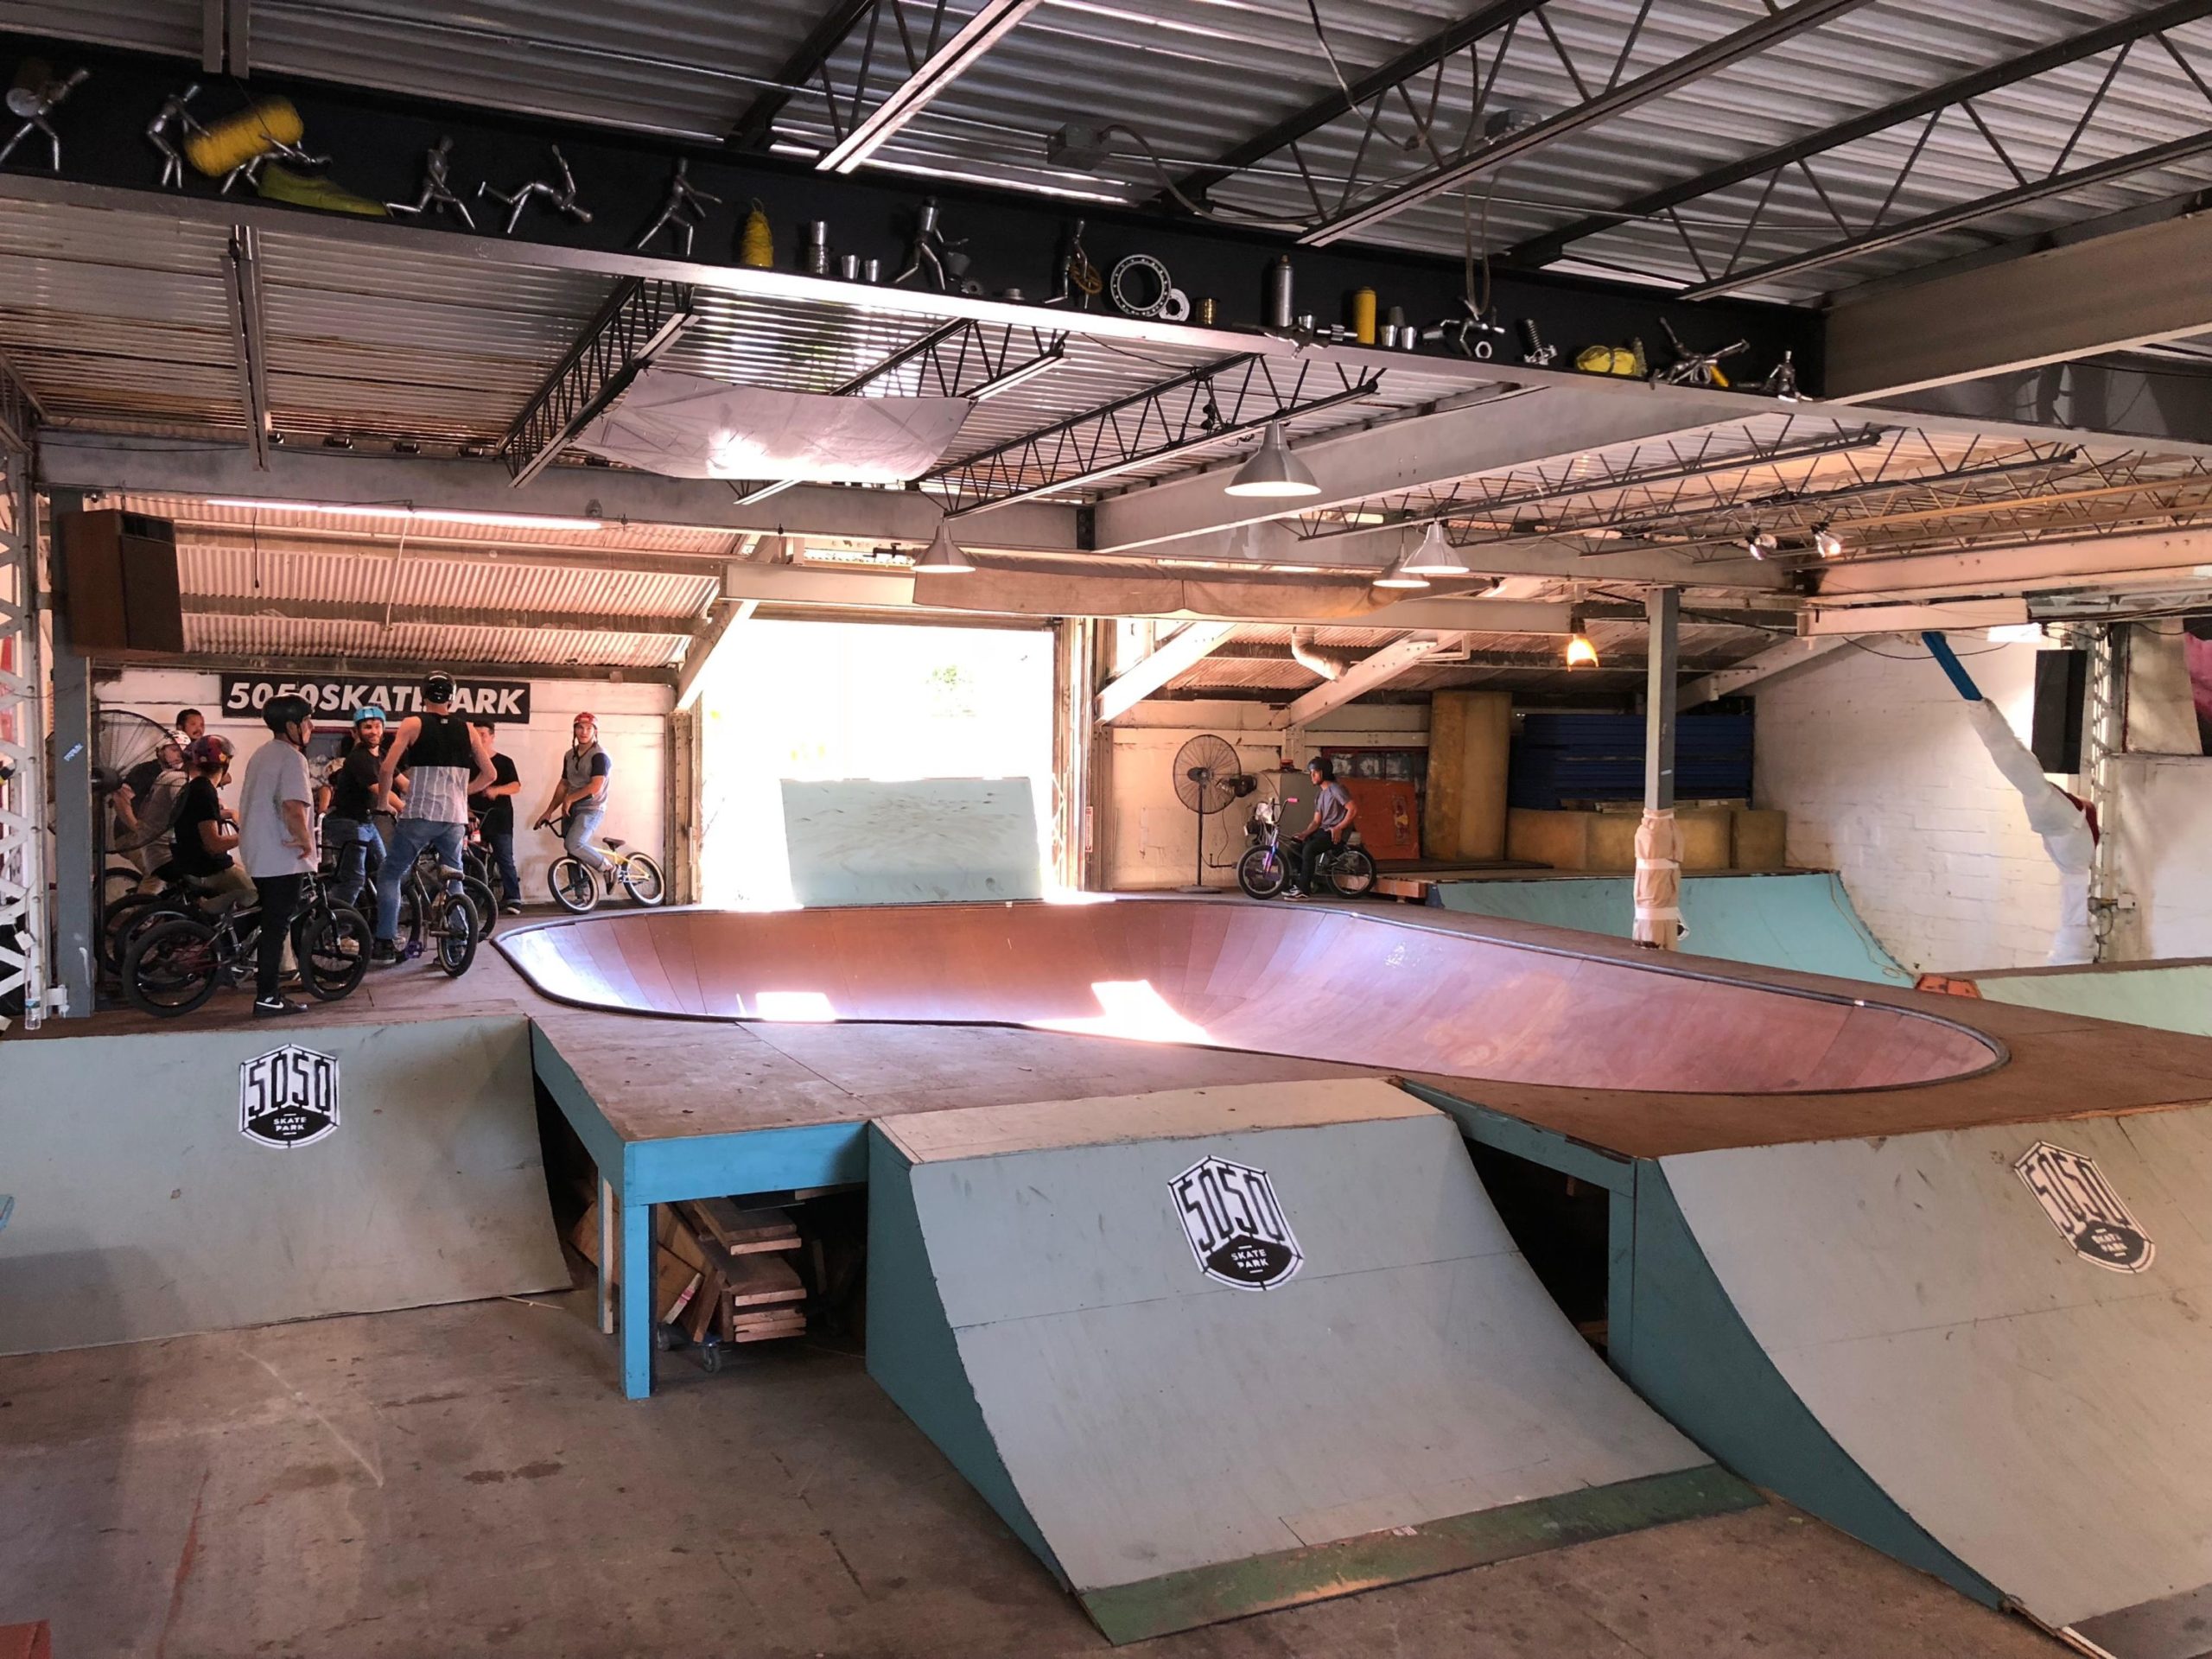 RedBull Bowl Relocated to 5050 Skatepark (2018)